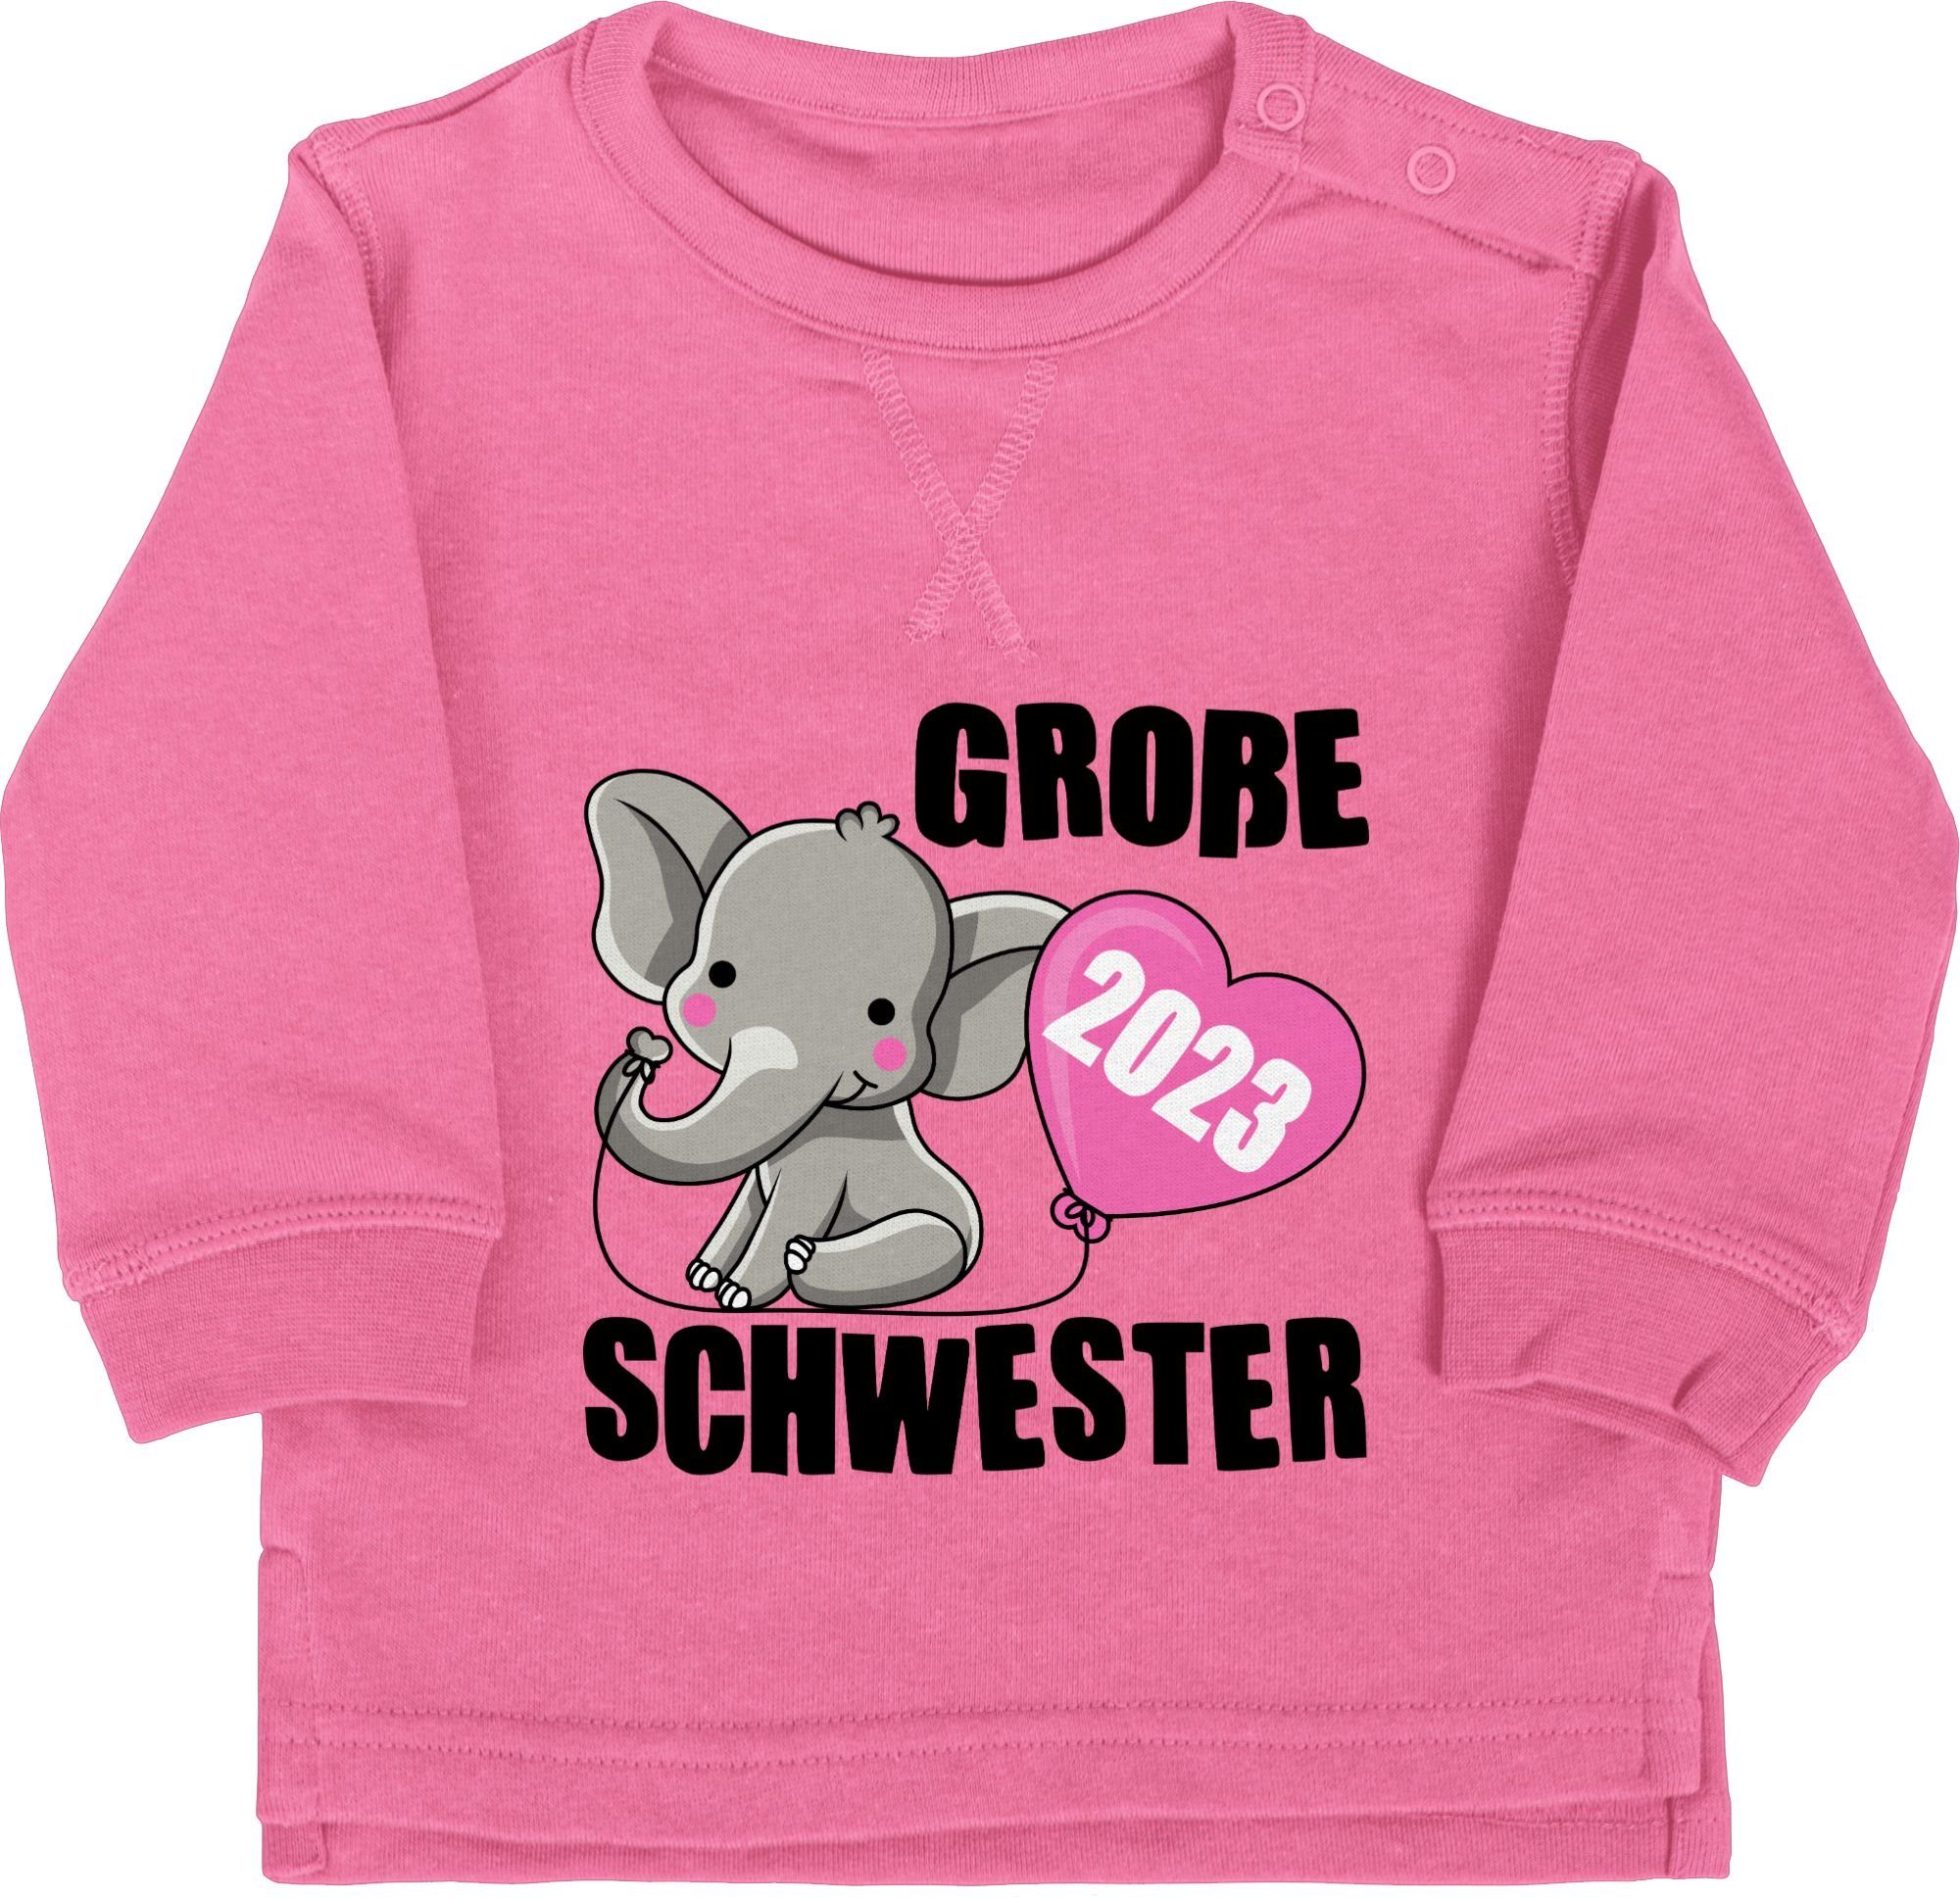 Bruder Schwester I Geschwister Sweatshirt Pink Große und Schwester 1 2023 Shirtracer